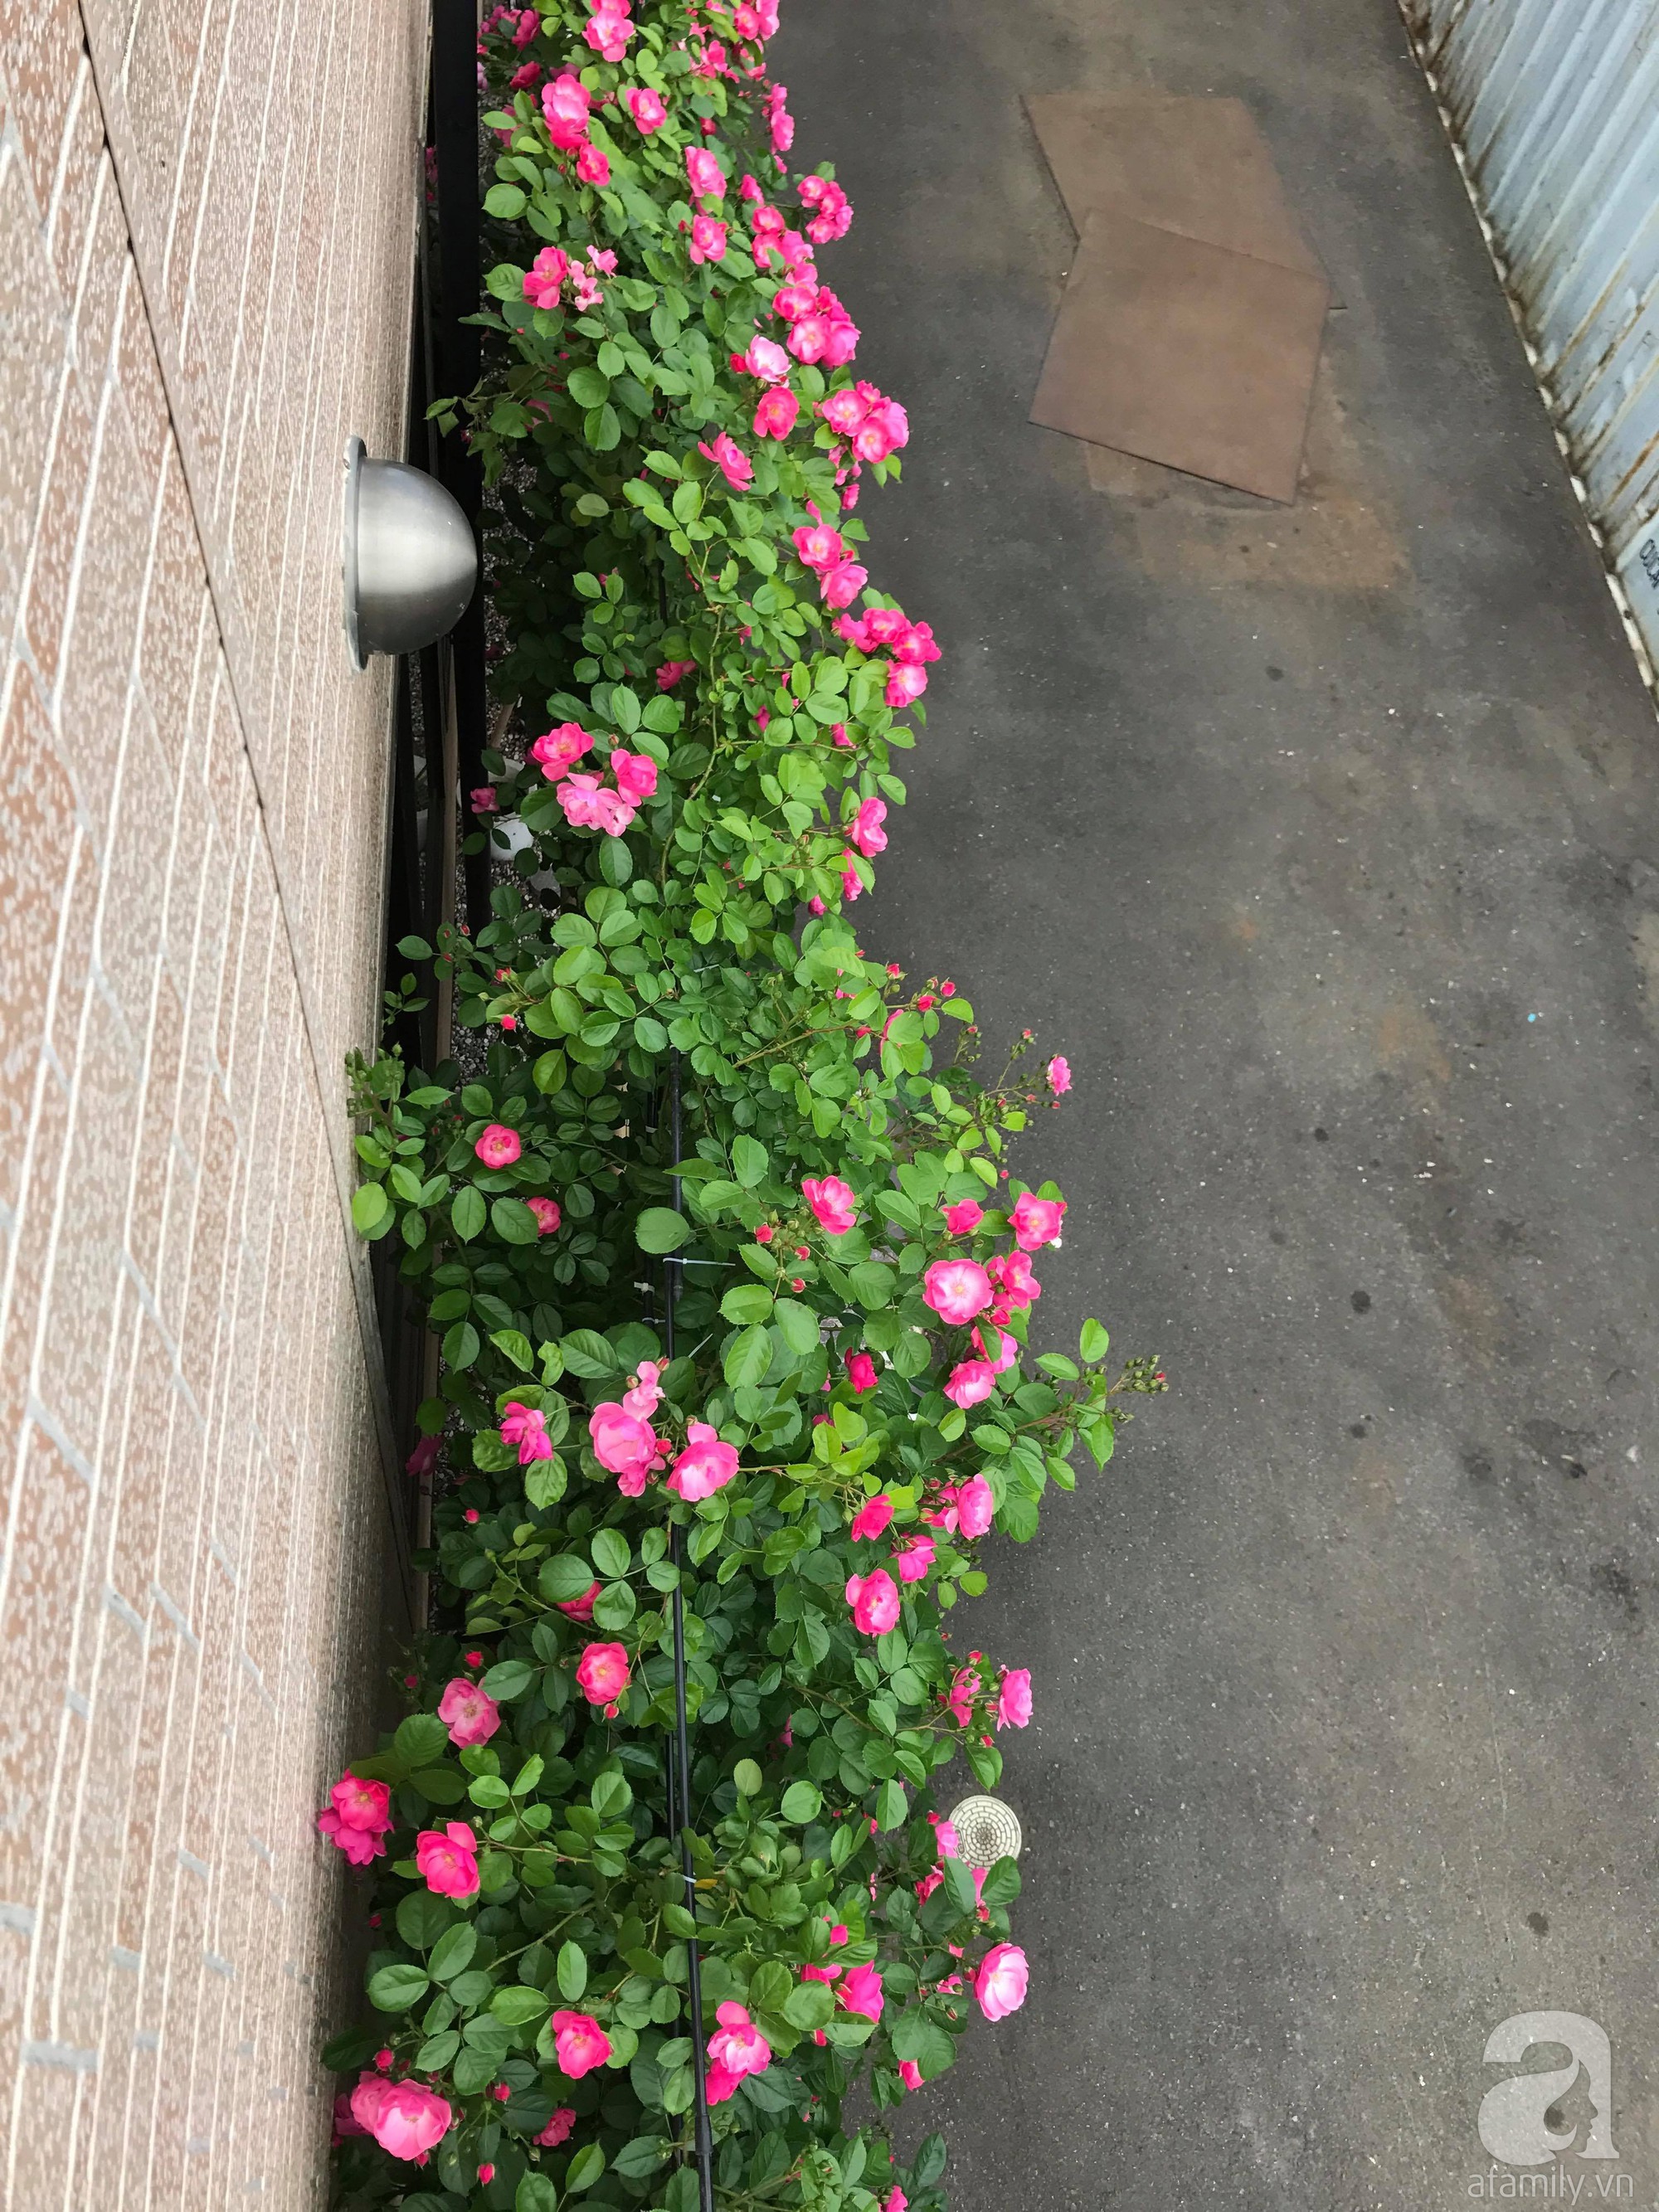 Bức tường hoa hồng đẹp như mơ trong sân vườn vỏn vẹn 6m² của người phụ nữ bỏ ra 5 năm miệt mài chăm sóc - Ảnh 23.